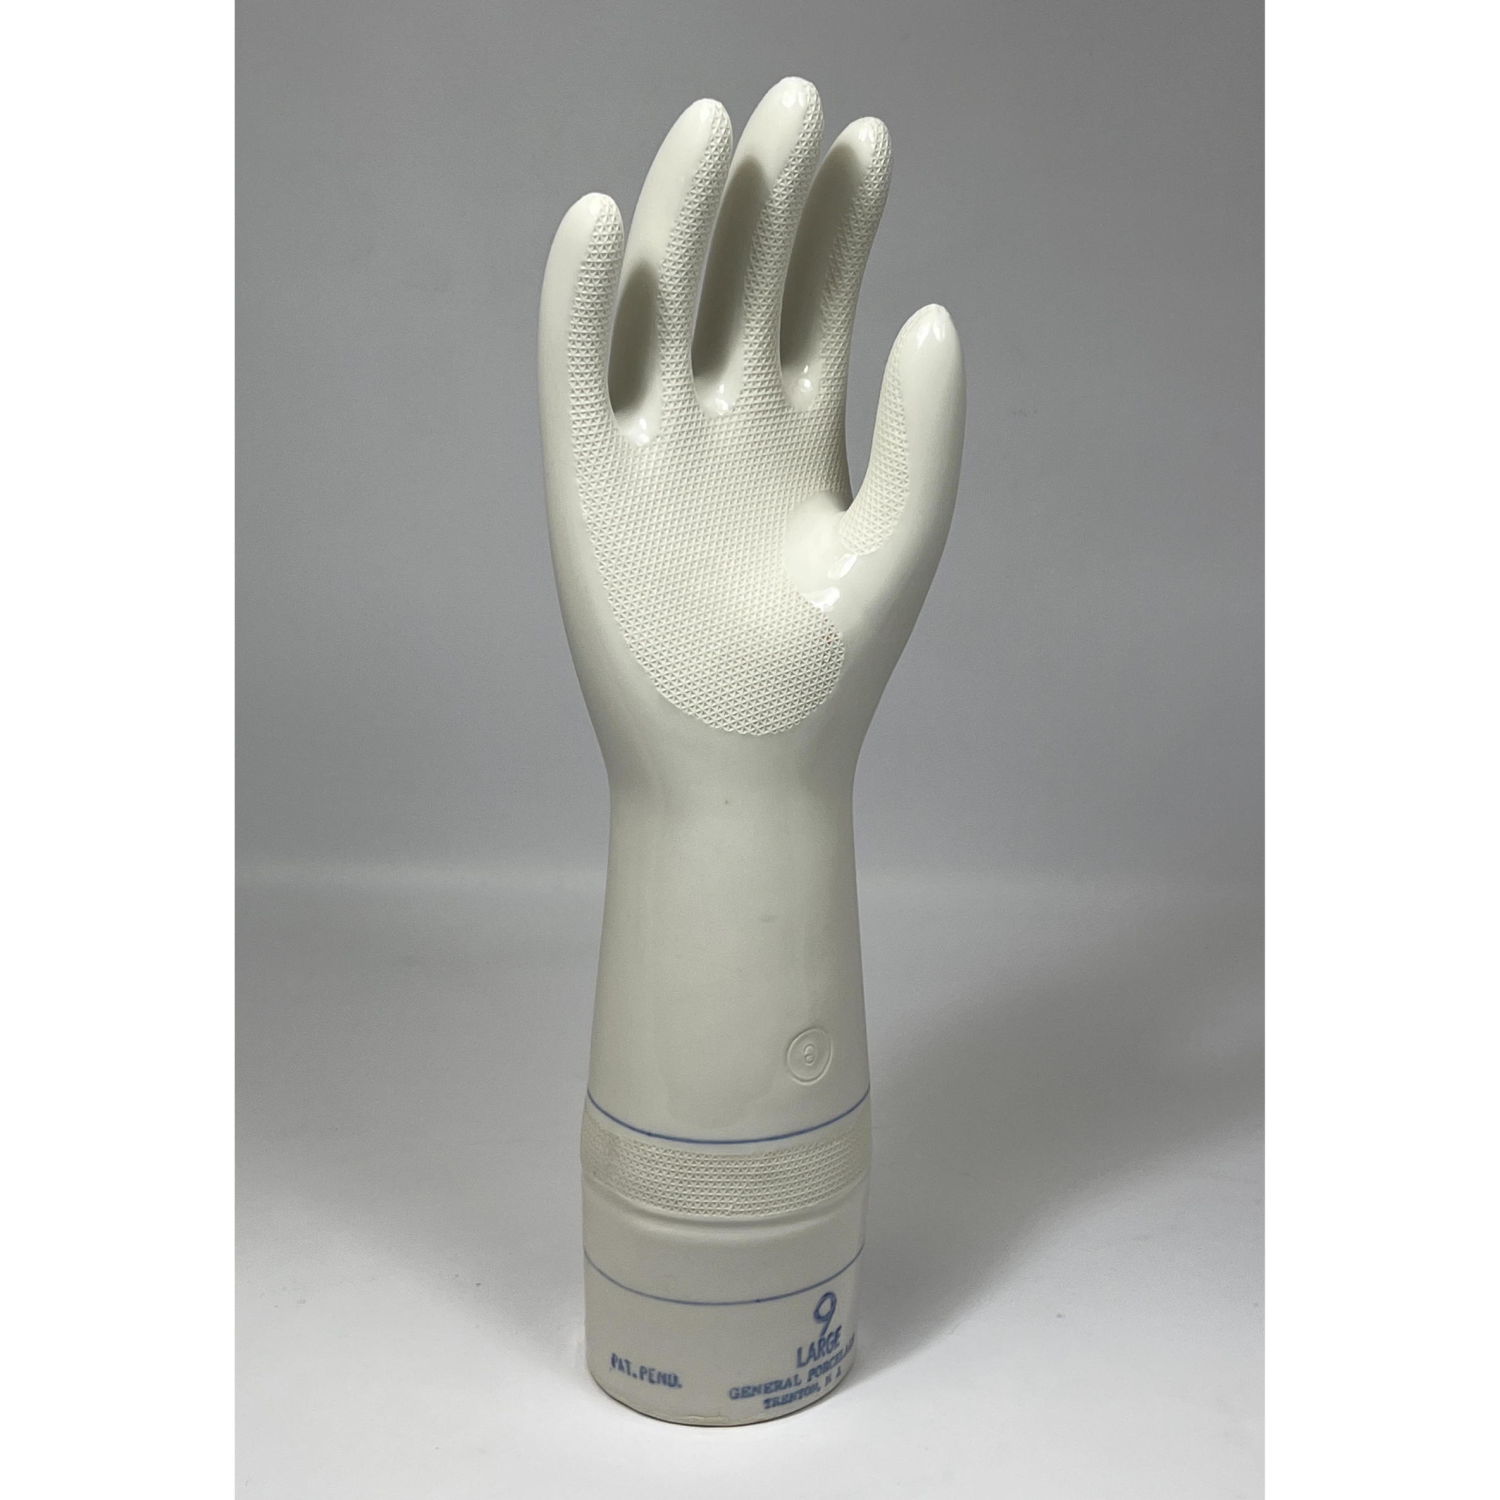 Glazed Porcelain Large Hand Glove